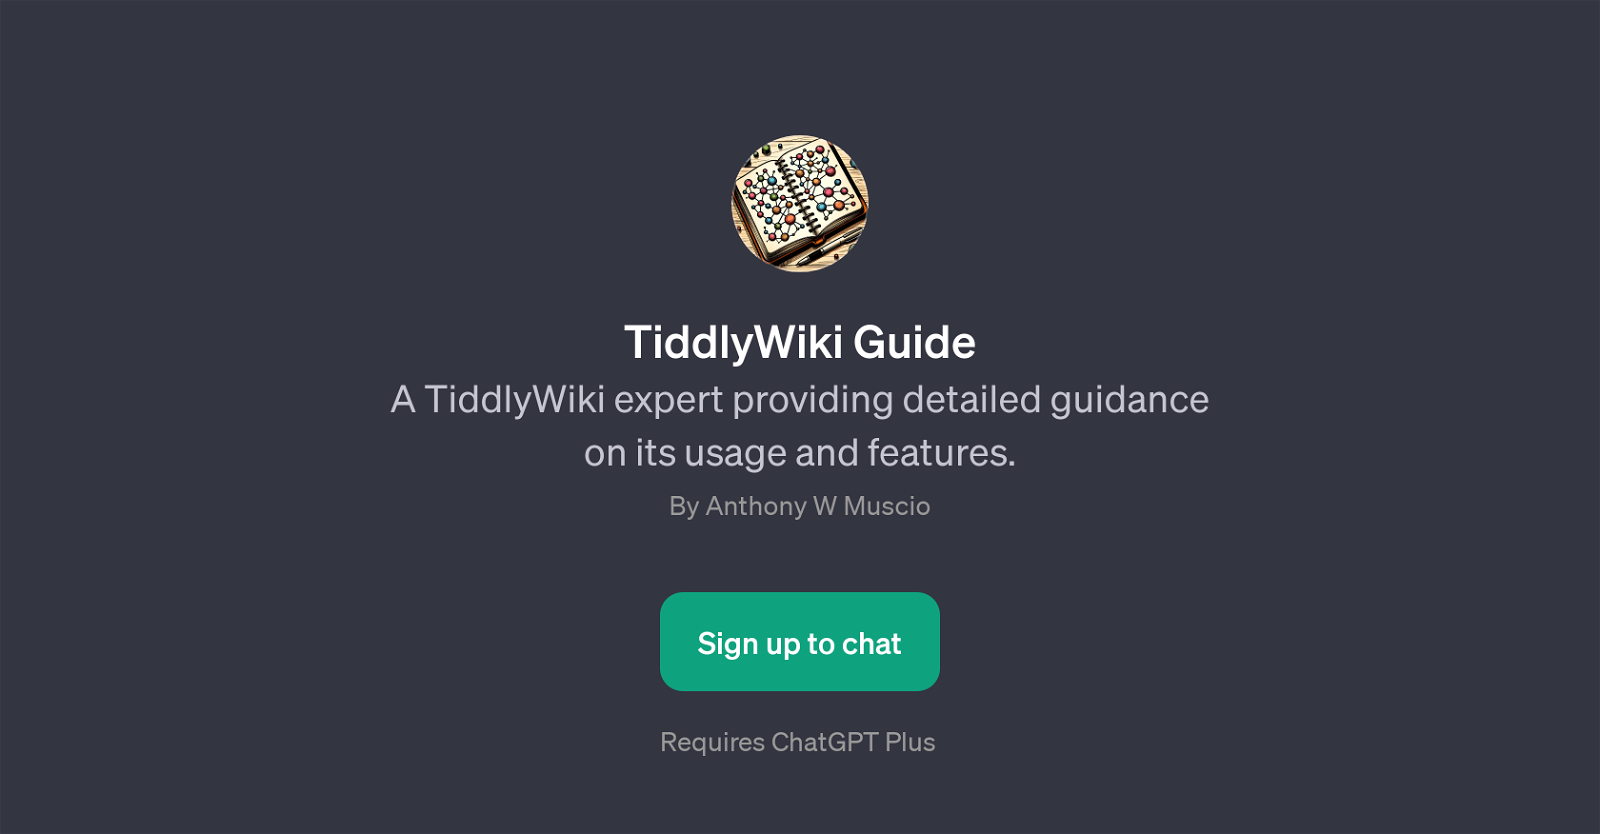 TiddlyWiki Guide website